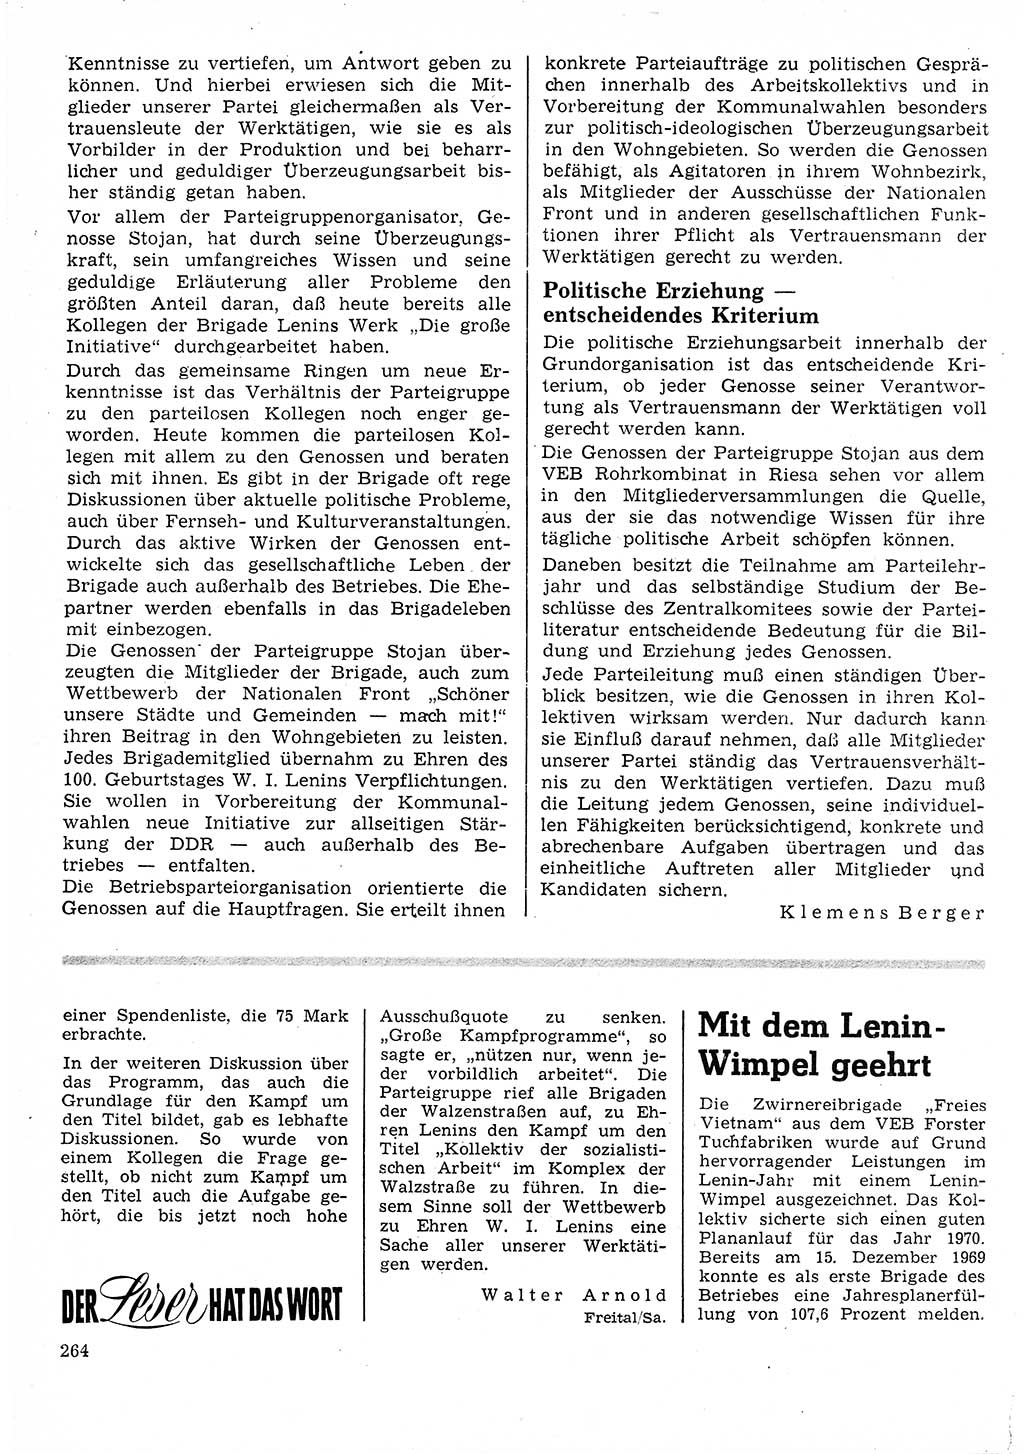 Neuer Weg (NW), Organ des Zentralkomitees (ZK) der SED (Sozialistische Einheitspartei Deutschlands) für Fragen des Parteilebens, 25. Jahrgang [Deutsche Demokratische Republik (DDR)] 1970, Seite 264 (NW ZK SED DDR 1970, S. 264)